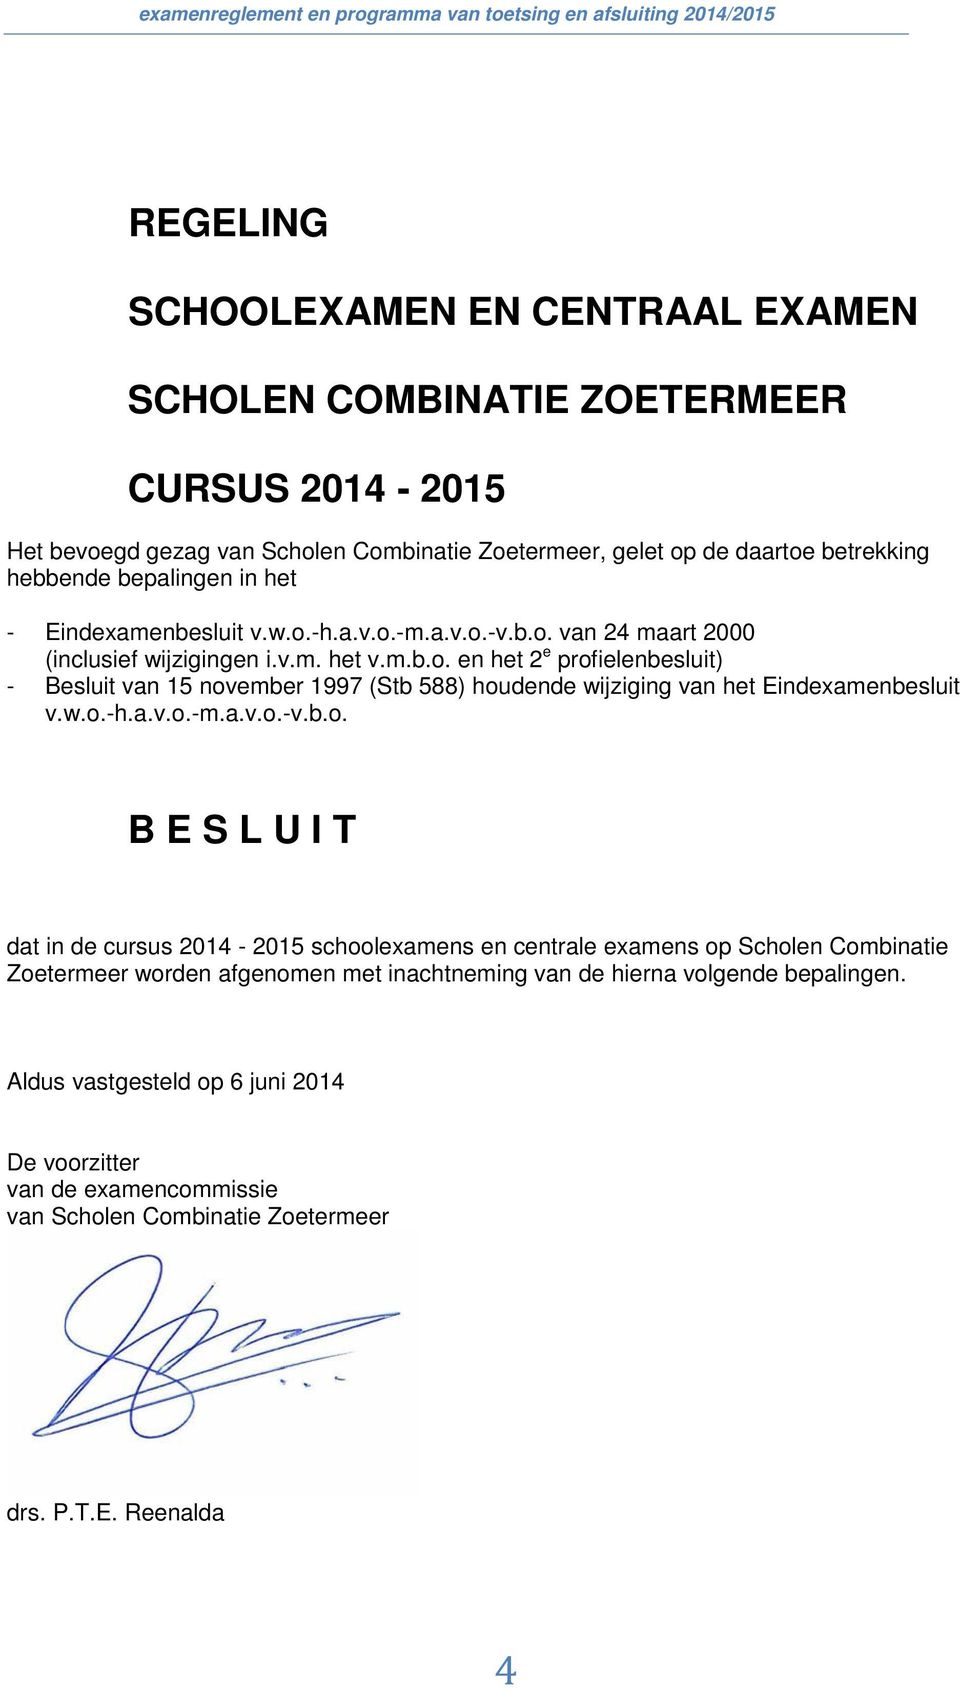 w.o.-h.a.v.o.-m.a.v.o.-v.b.o. B E S L U I T dat in de cursus 2014-2015 schoolexamens en centrale examens op Scholen Combinatie Zoetermeer worden afgenomen met inachtneming van de hierna volgende bepalingen.